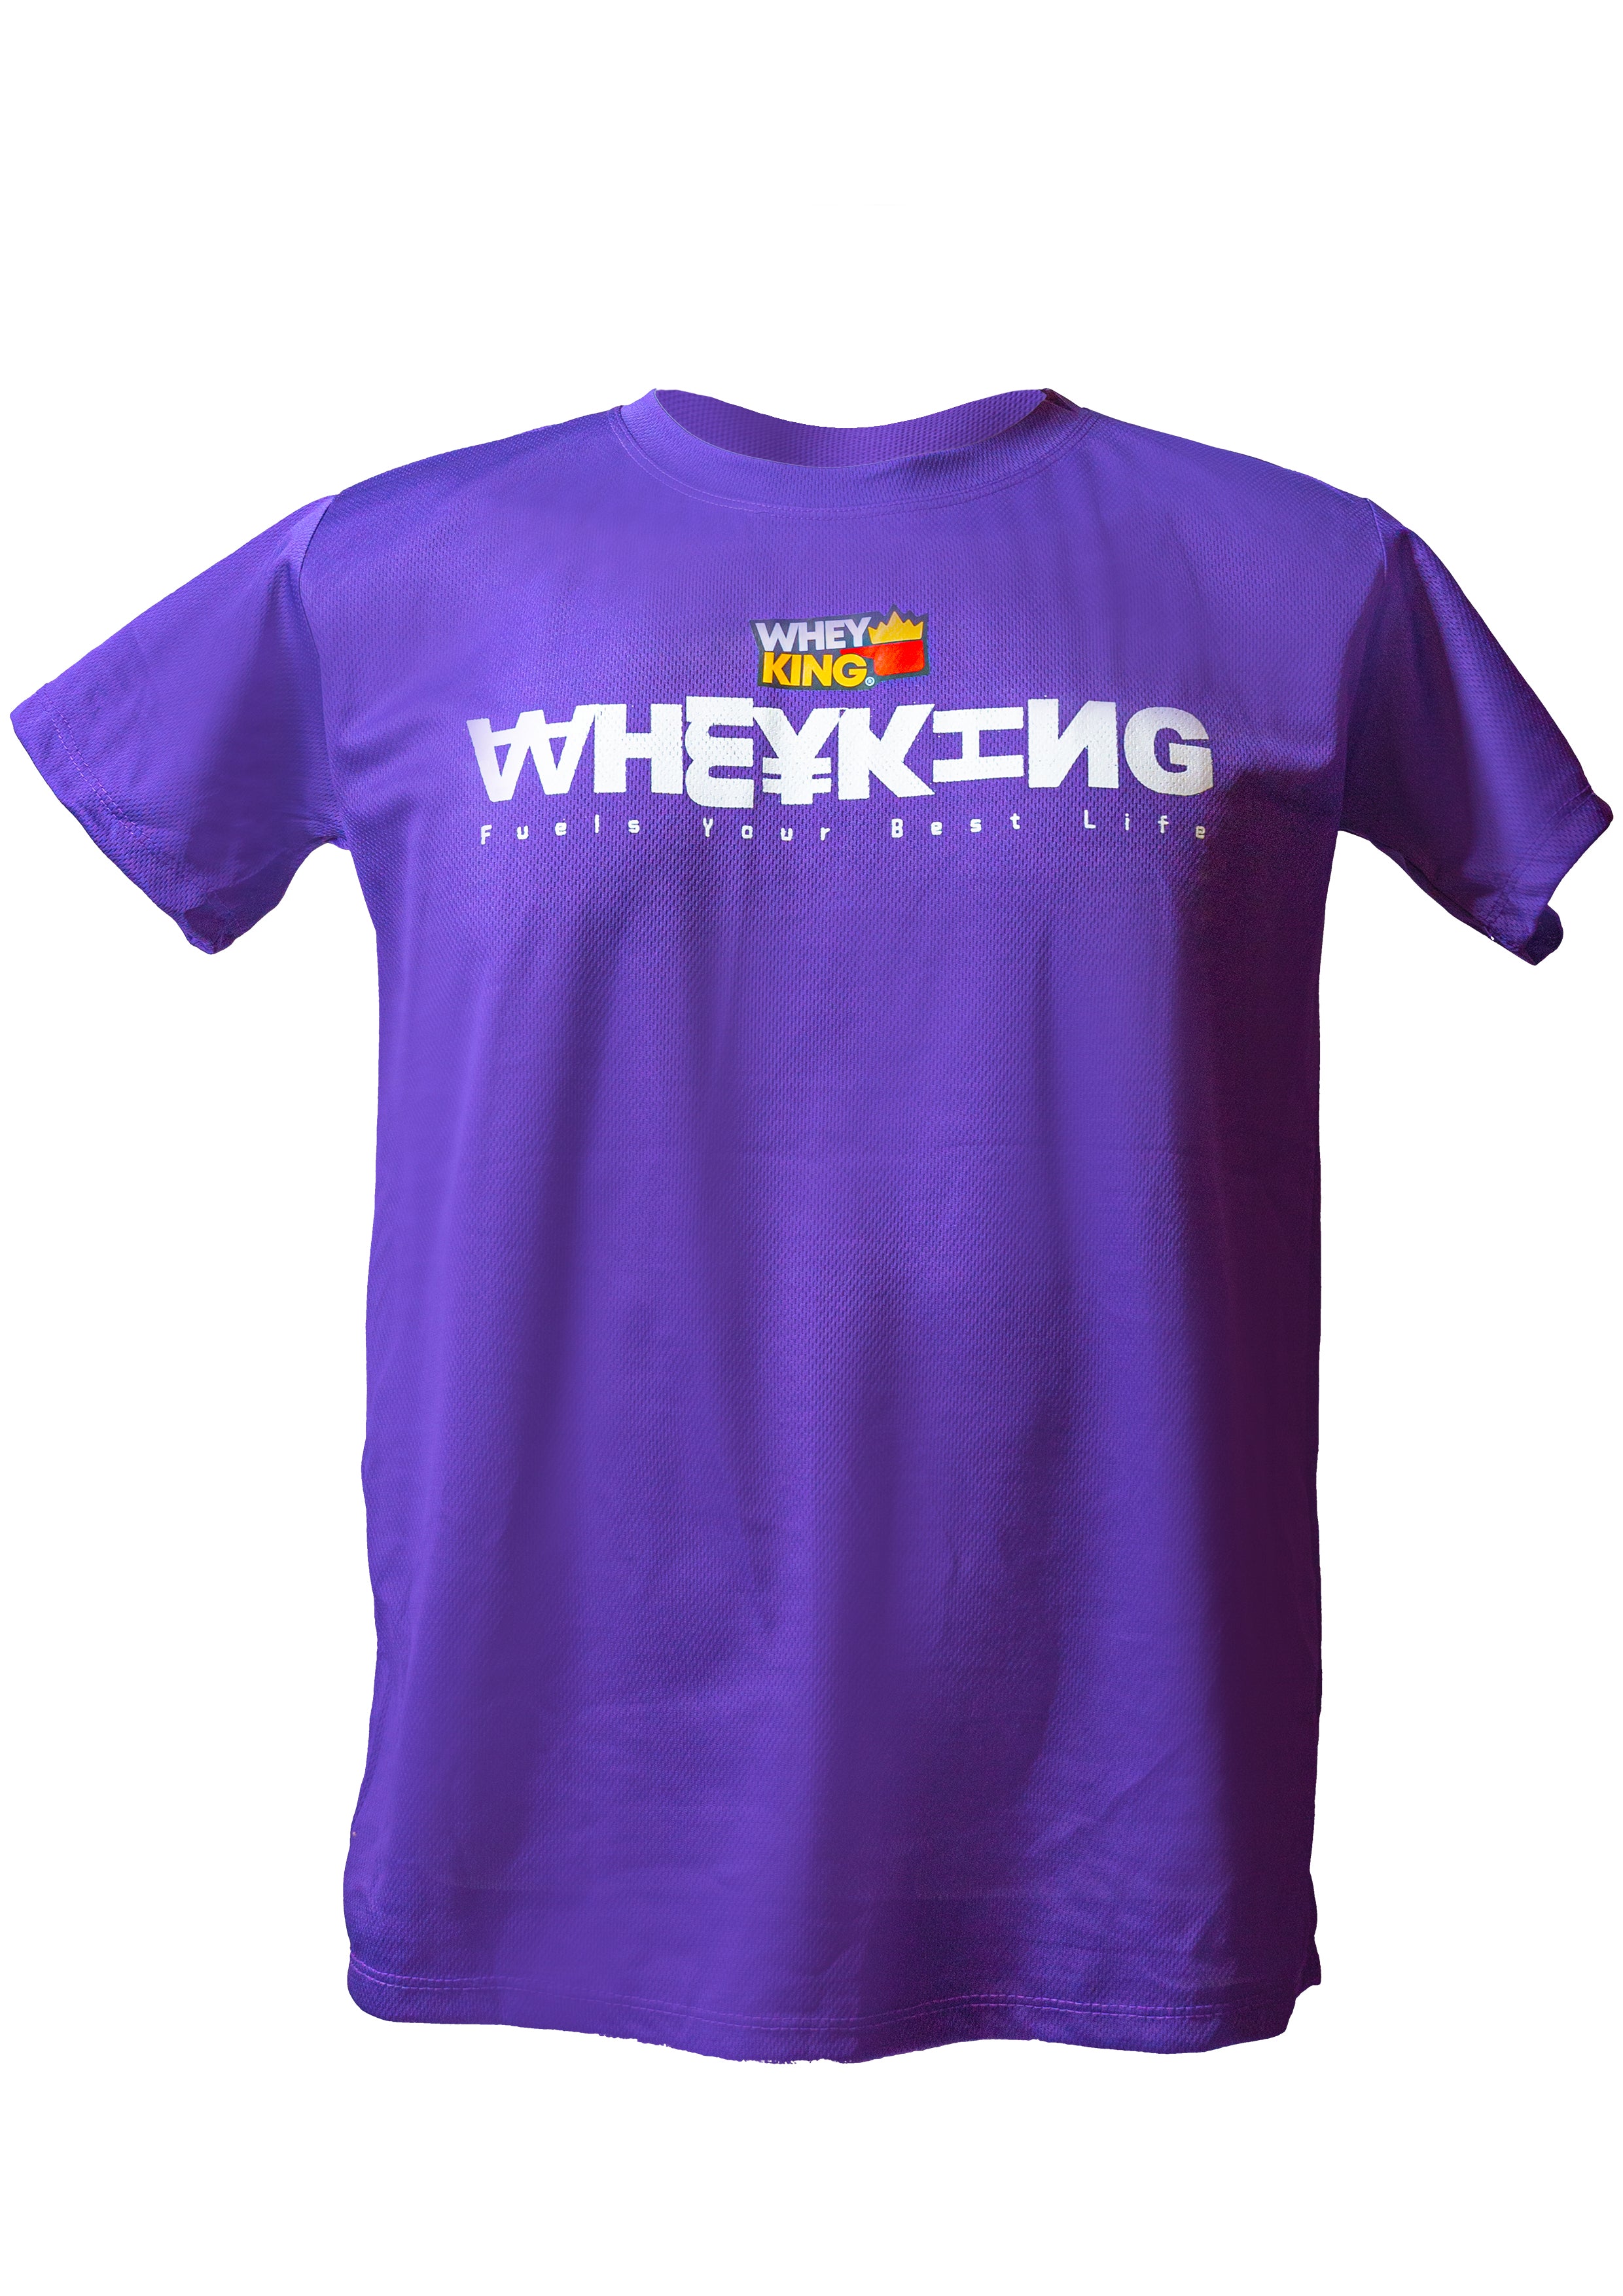 Wheyking Drifit Logo Shirt - Free Size